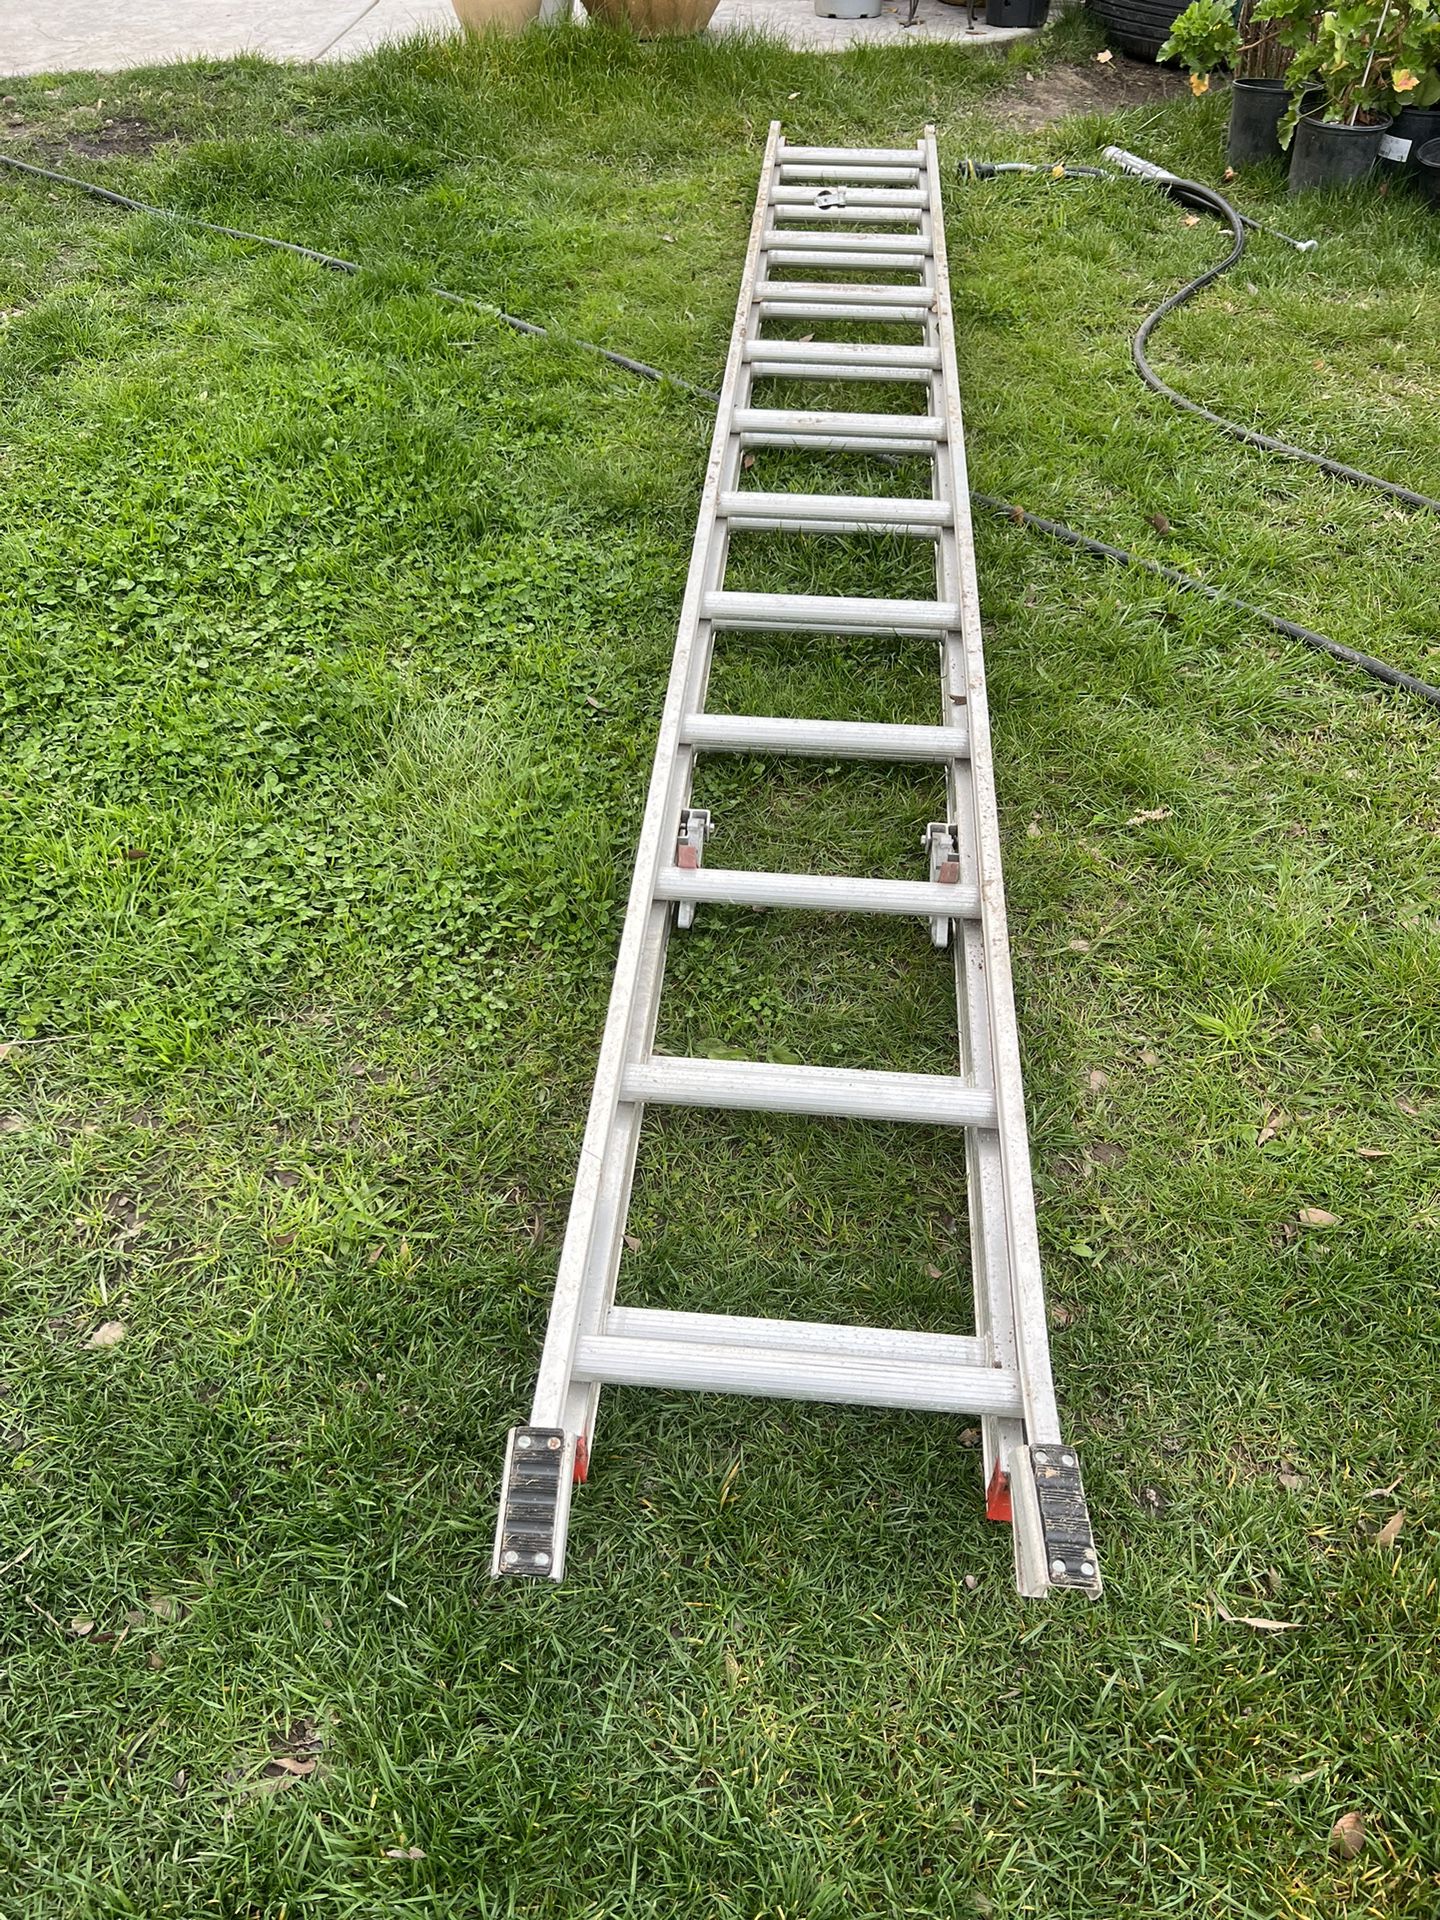 24ft Ladder 